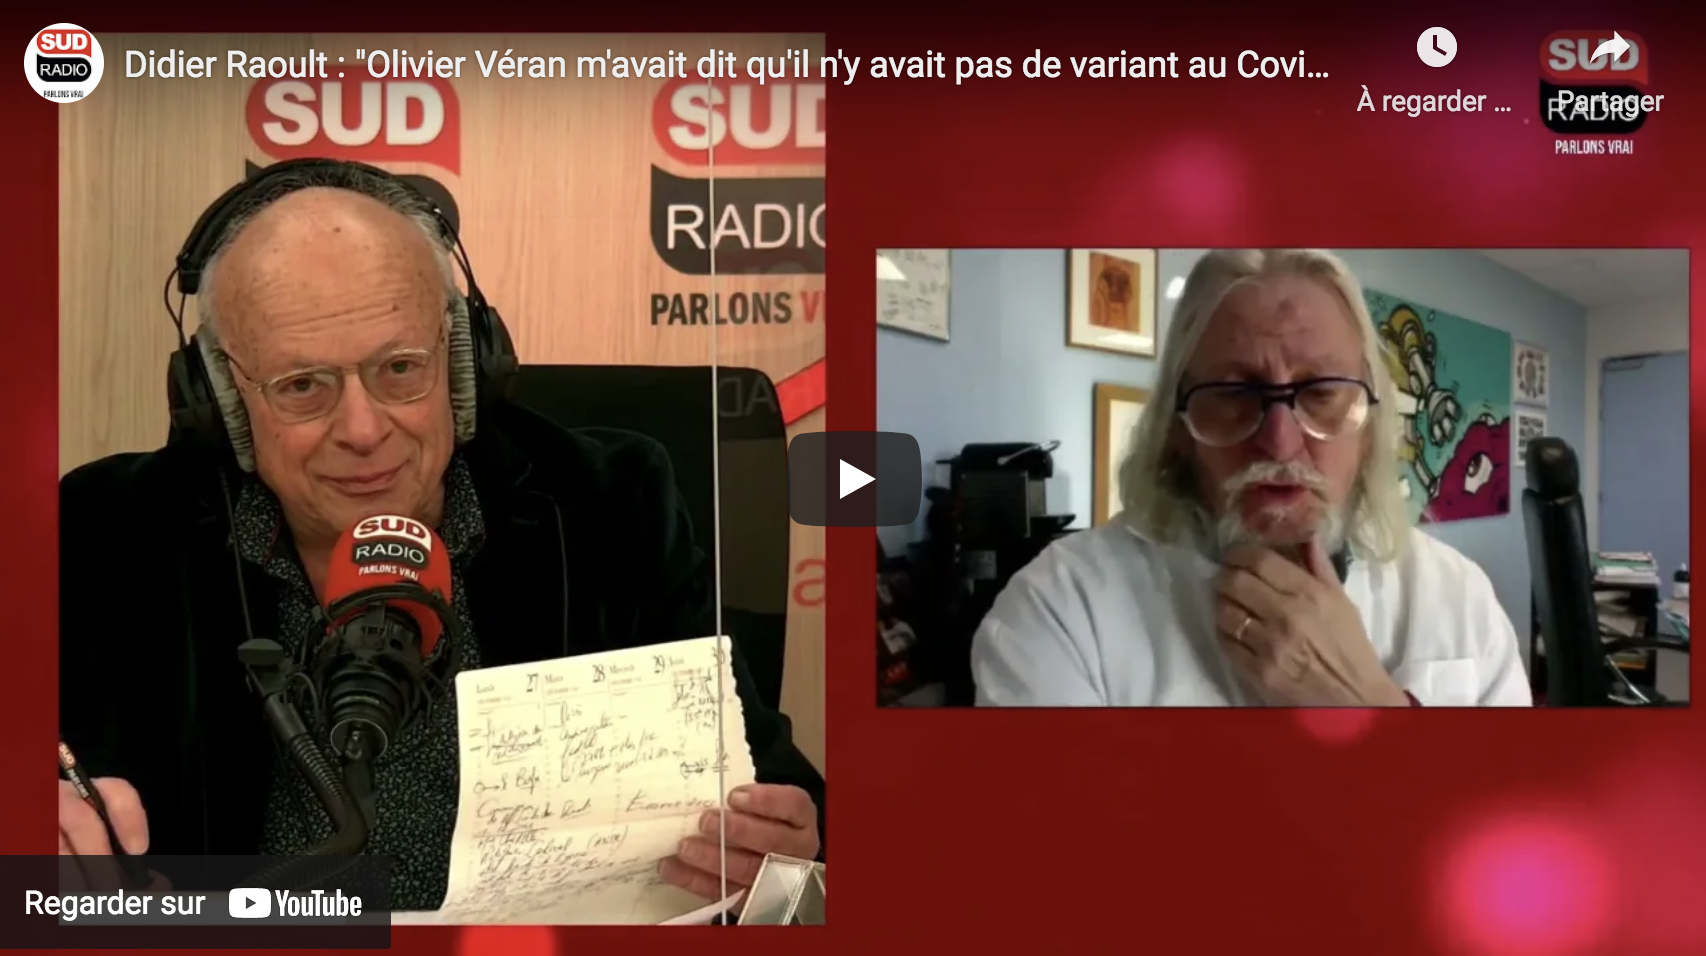 Pr Didier Raoult : “Olivier Véran m’avait dit qu’il n’y avait pas de variant au Covid” (VIDÉO)